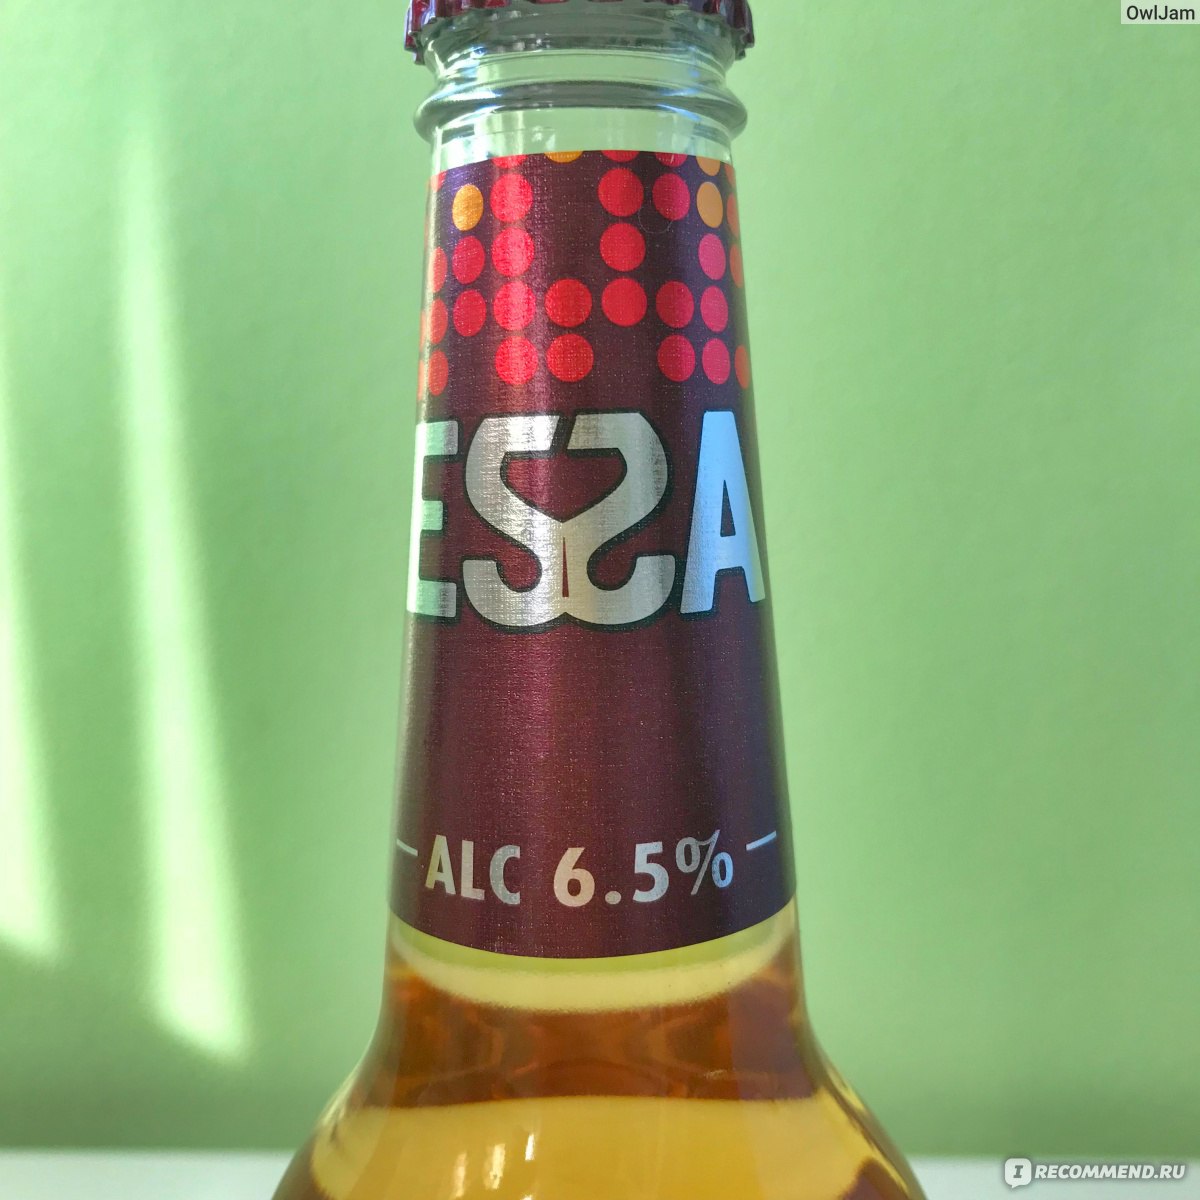 Пиво Эсса крепость